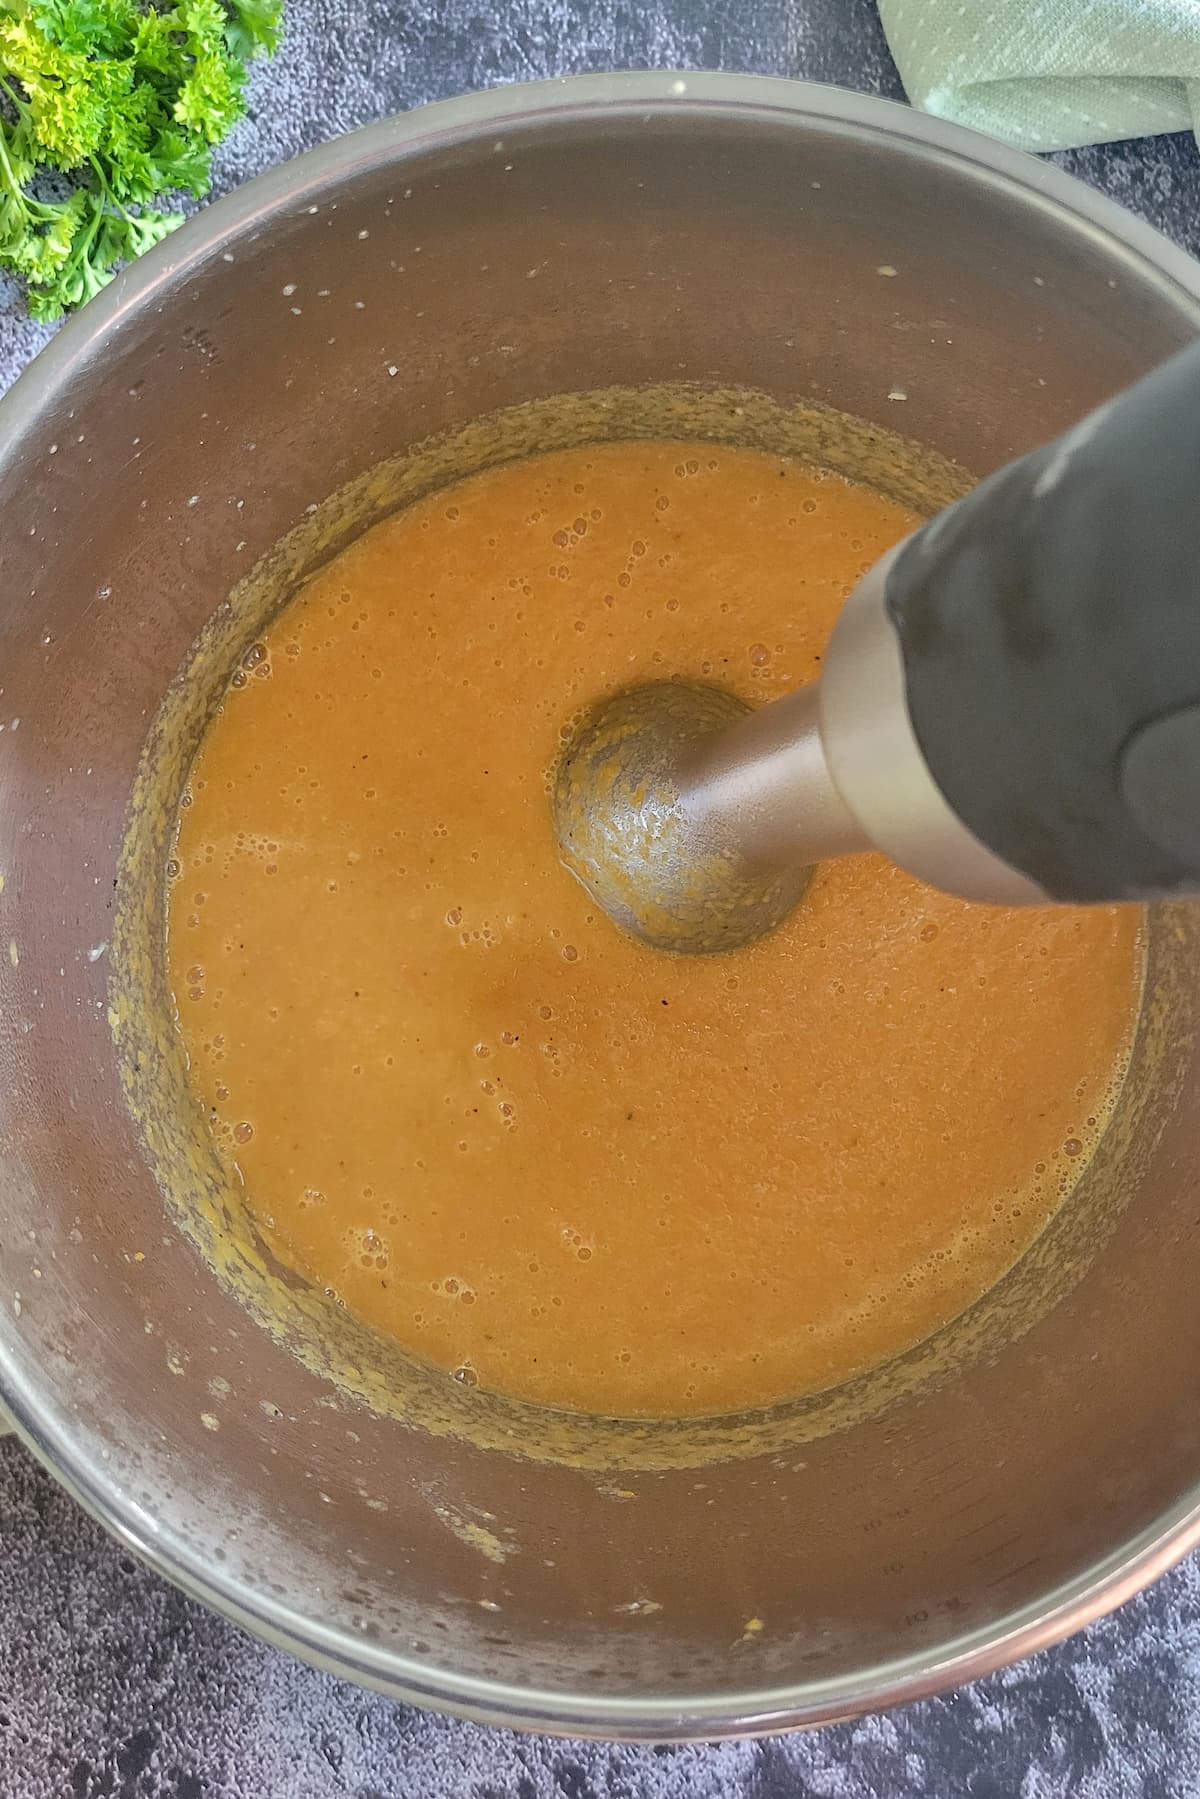 immersion blender in a pot of orange soup